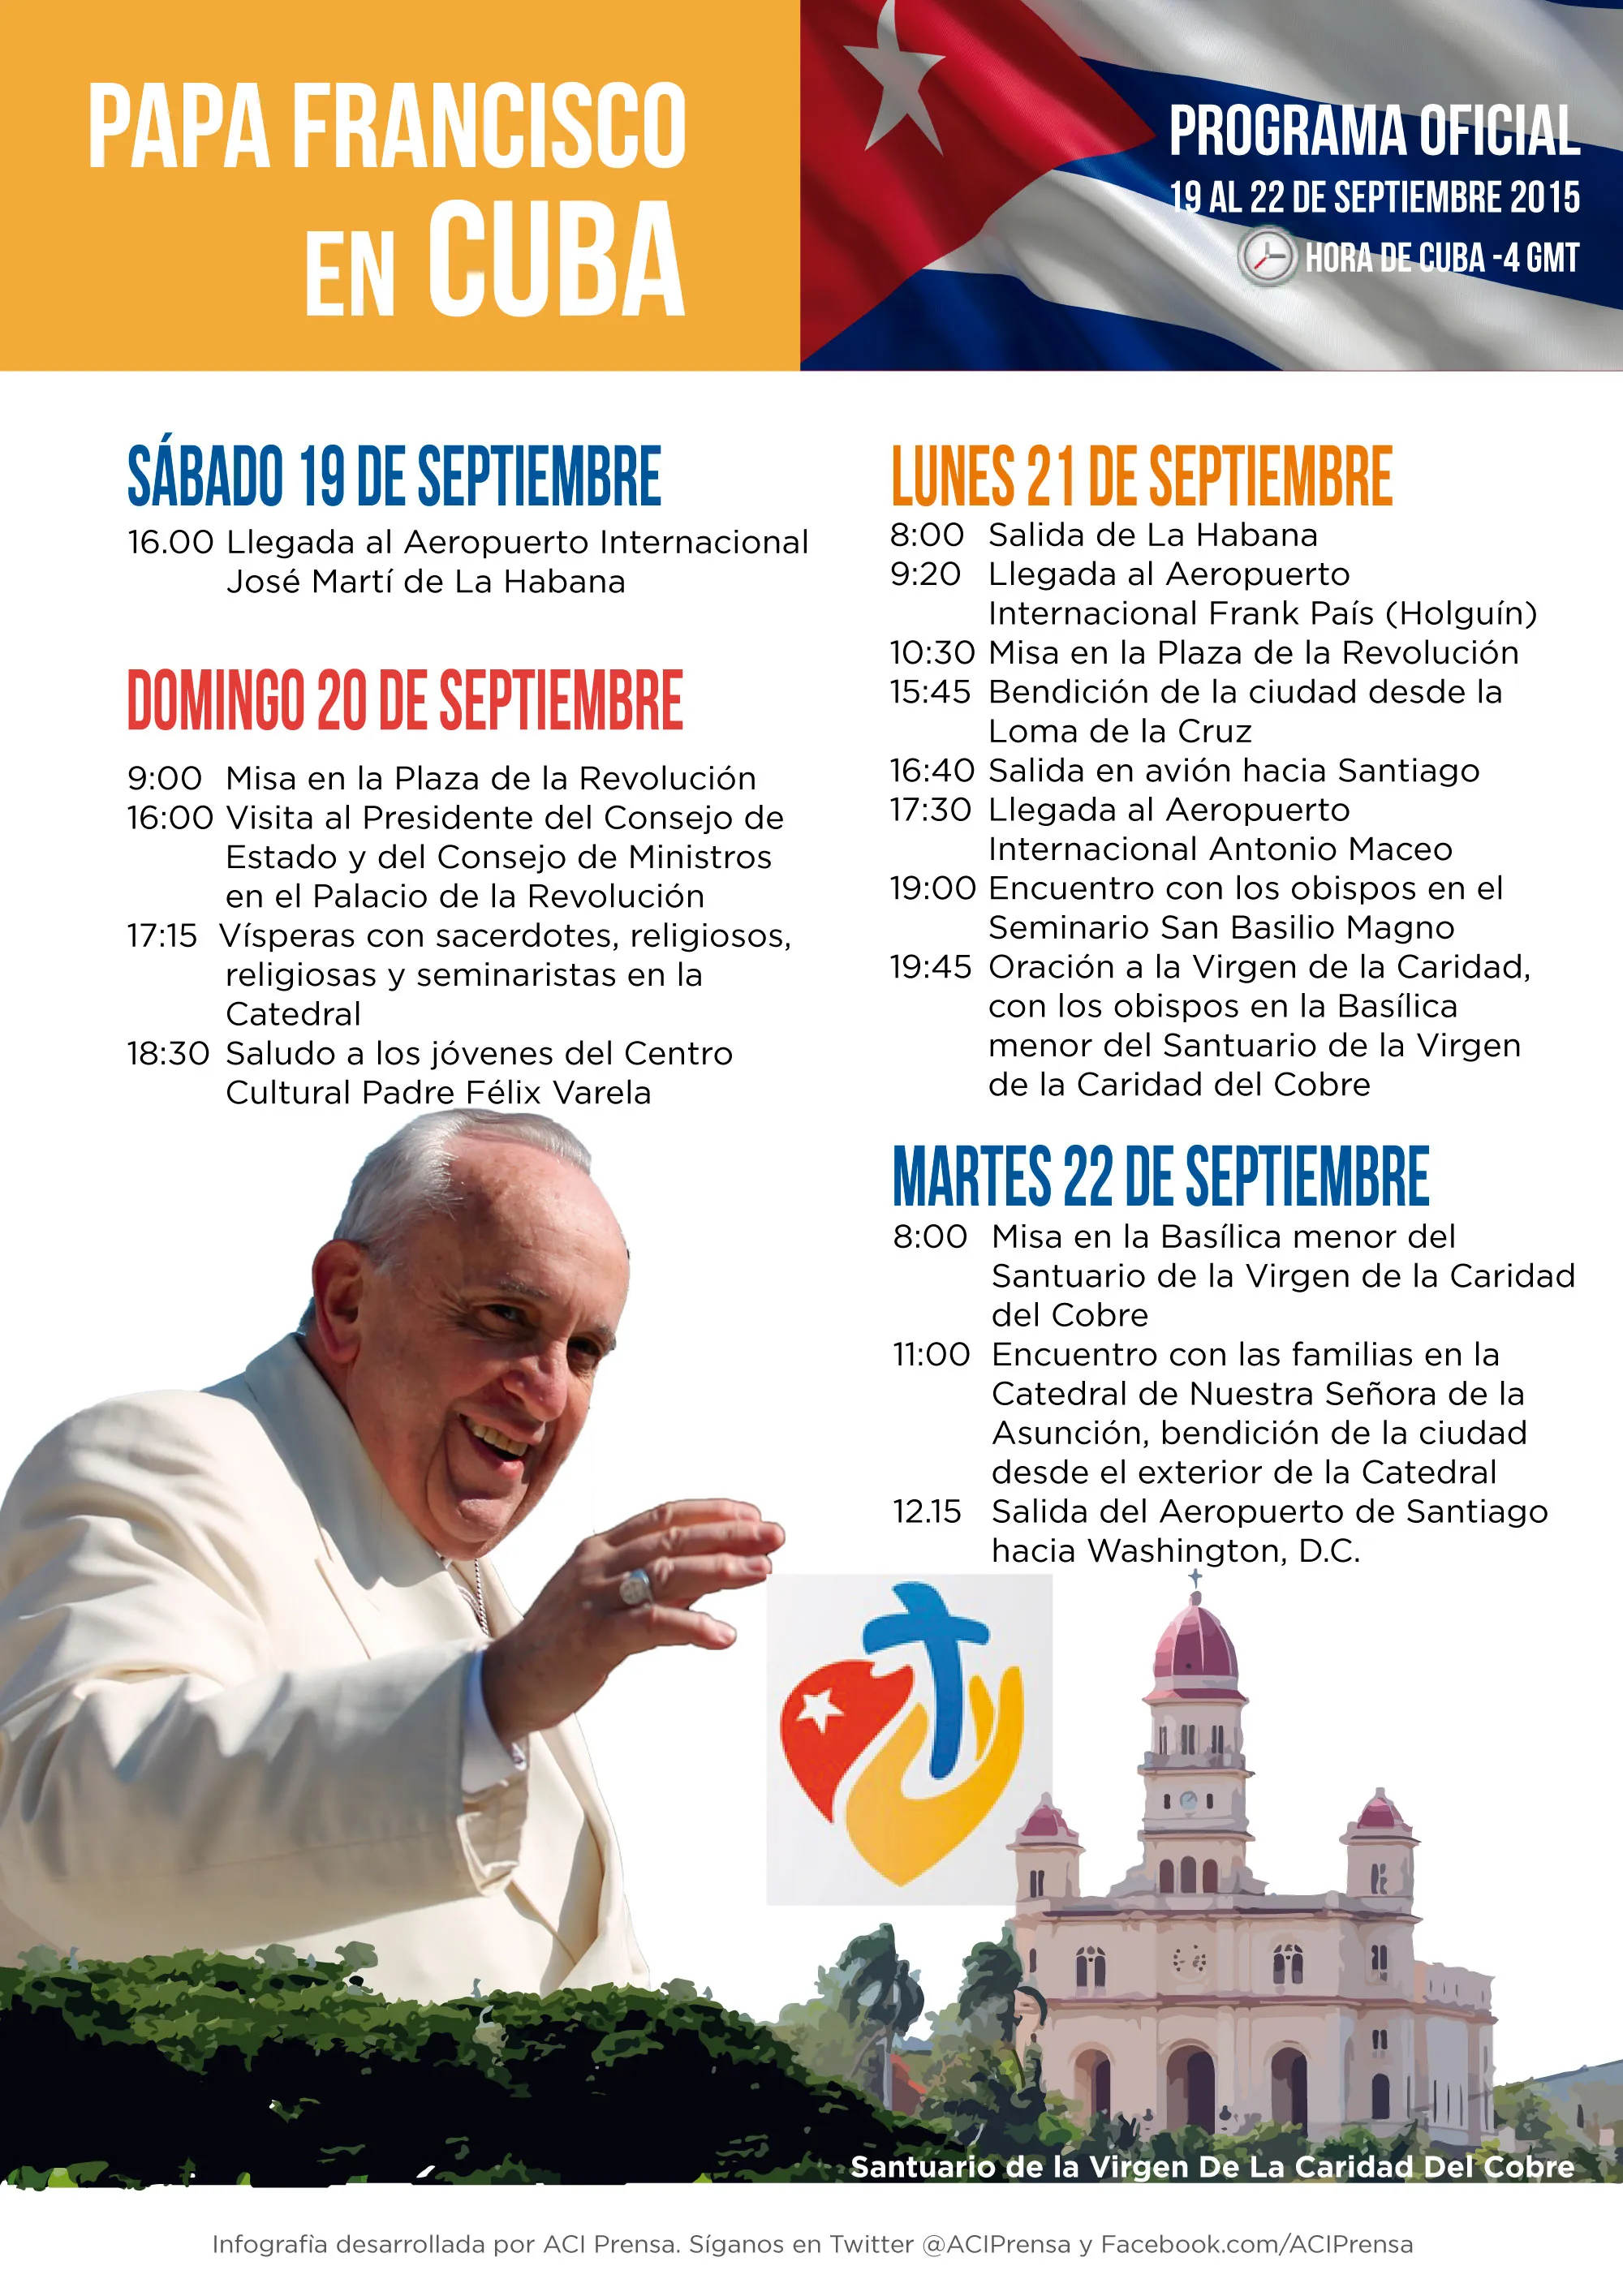 Este es el programa oficial del viaje del Papa Francisco a Cuba